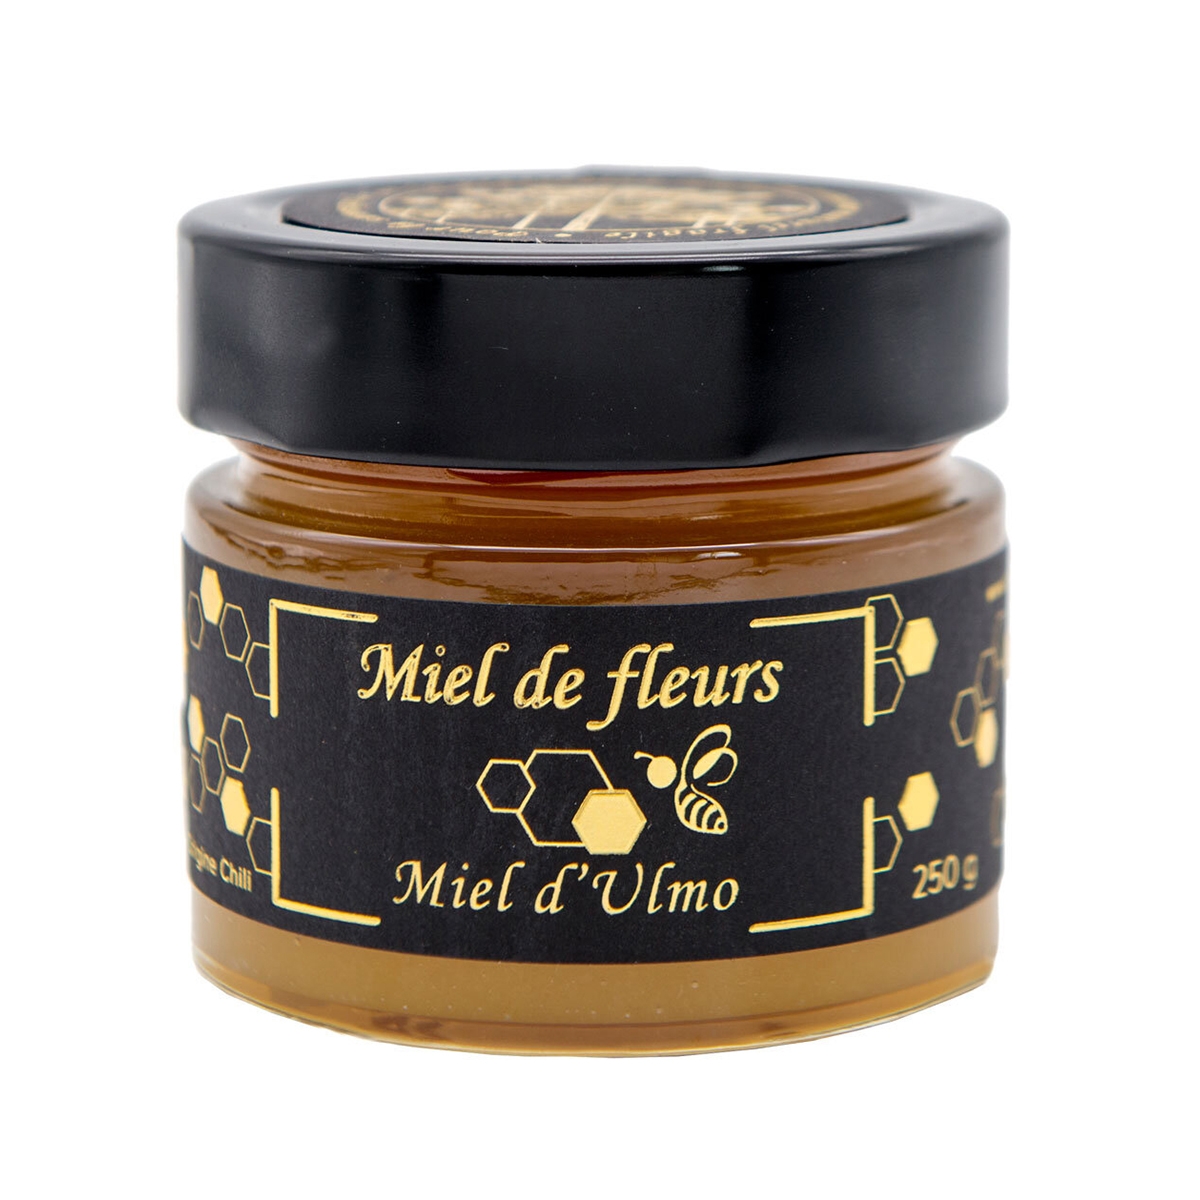 Rare honey Ulmo organic honey – Mr Duck